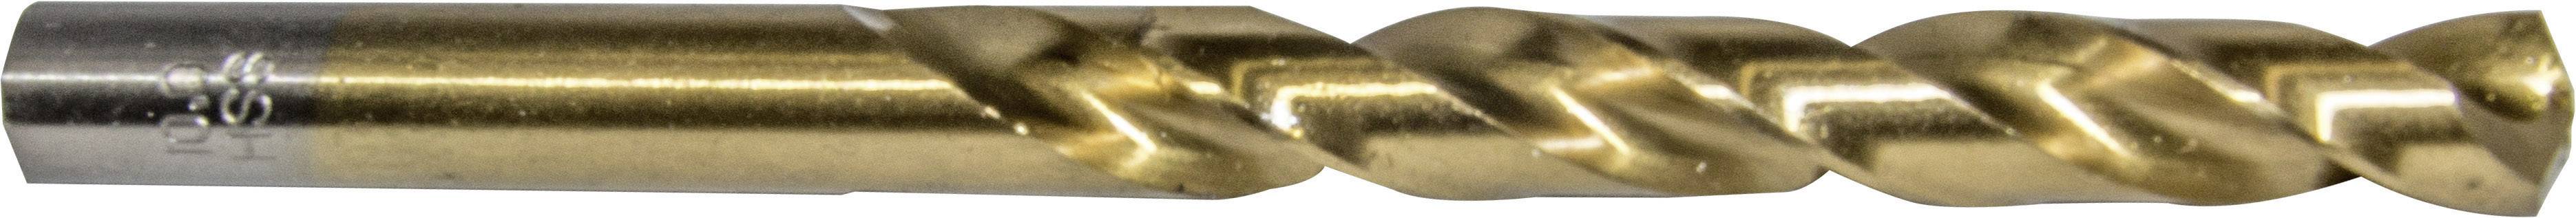 HELLER 29266 5 Metall-Spiralbohrer 1 Stück 6 mm Gesamtlänge 93 mm 1 St.